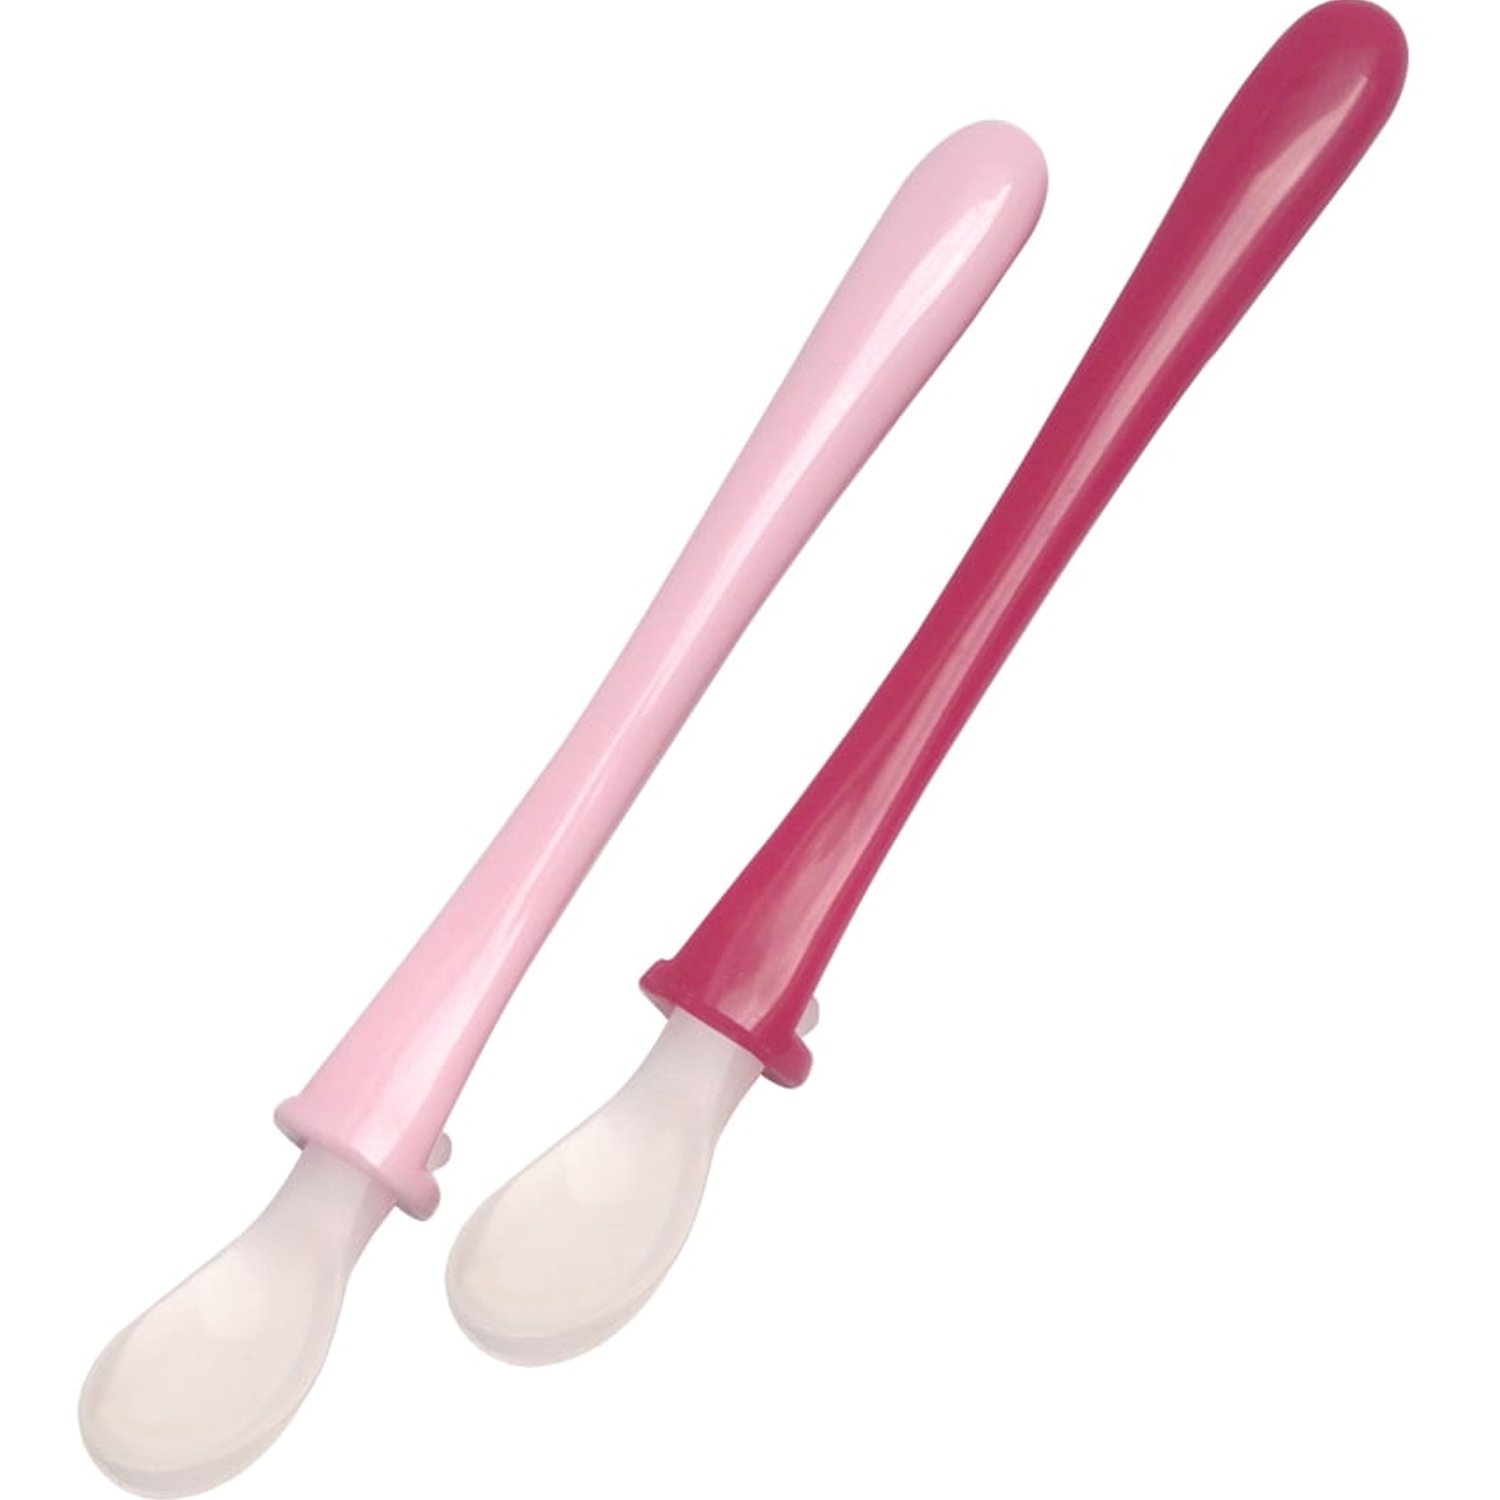 Mam Mam Primamma Silicone Spoon 6m+ Ροζ - Κόκκινο Μαλακά Κουταλάκια Σιλικόνης για τα Πρώτα Γεύματα του Μωρού 2 Τεμάχια, Κωδ 821G